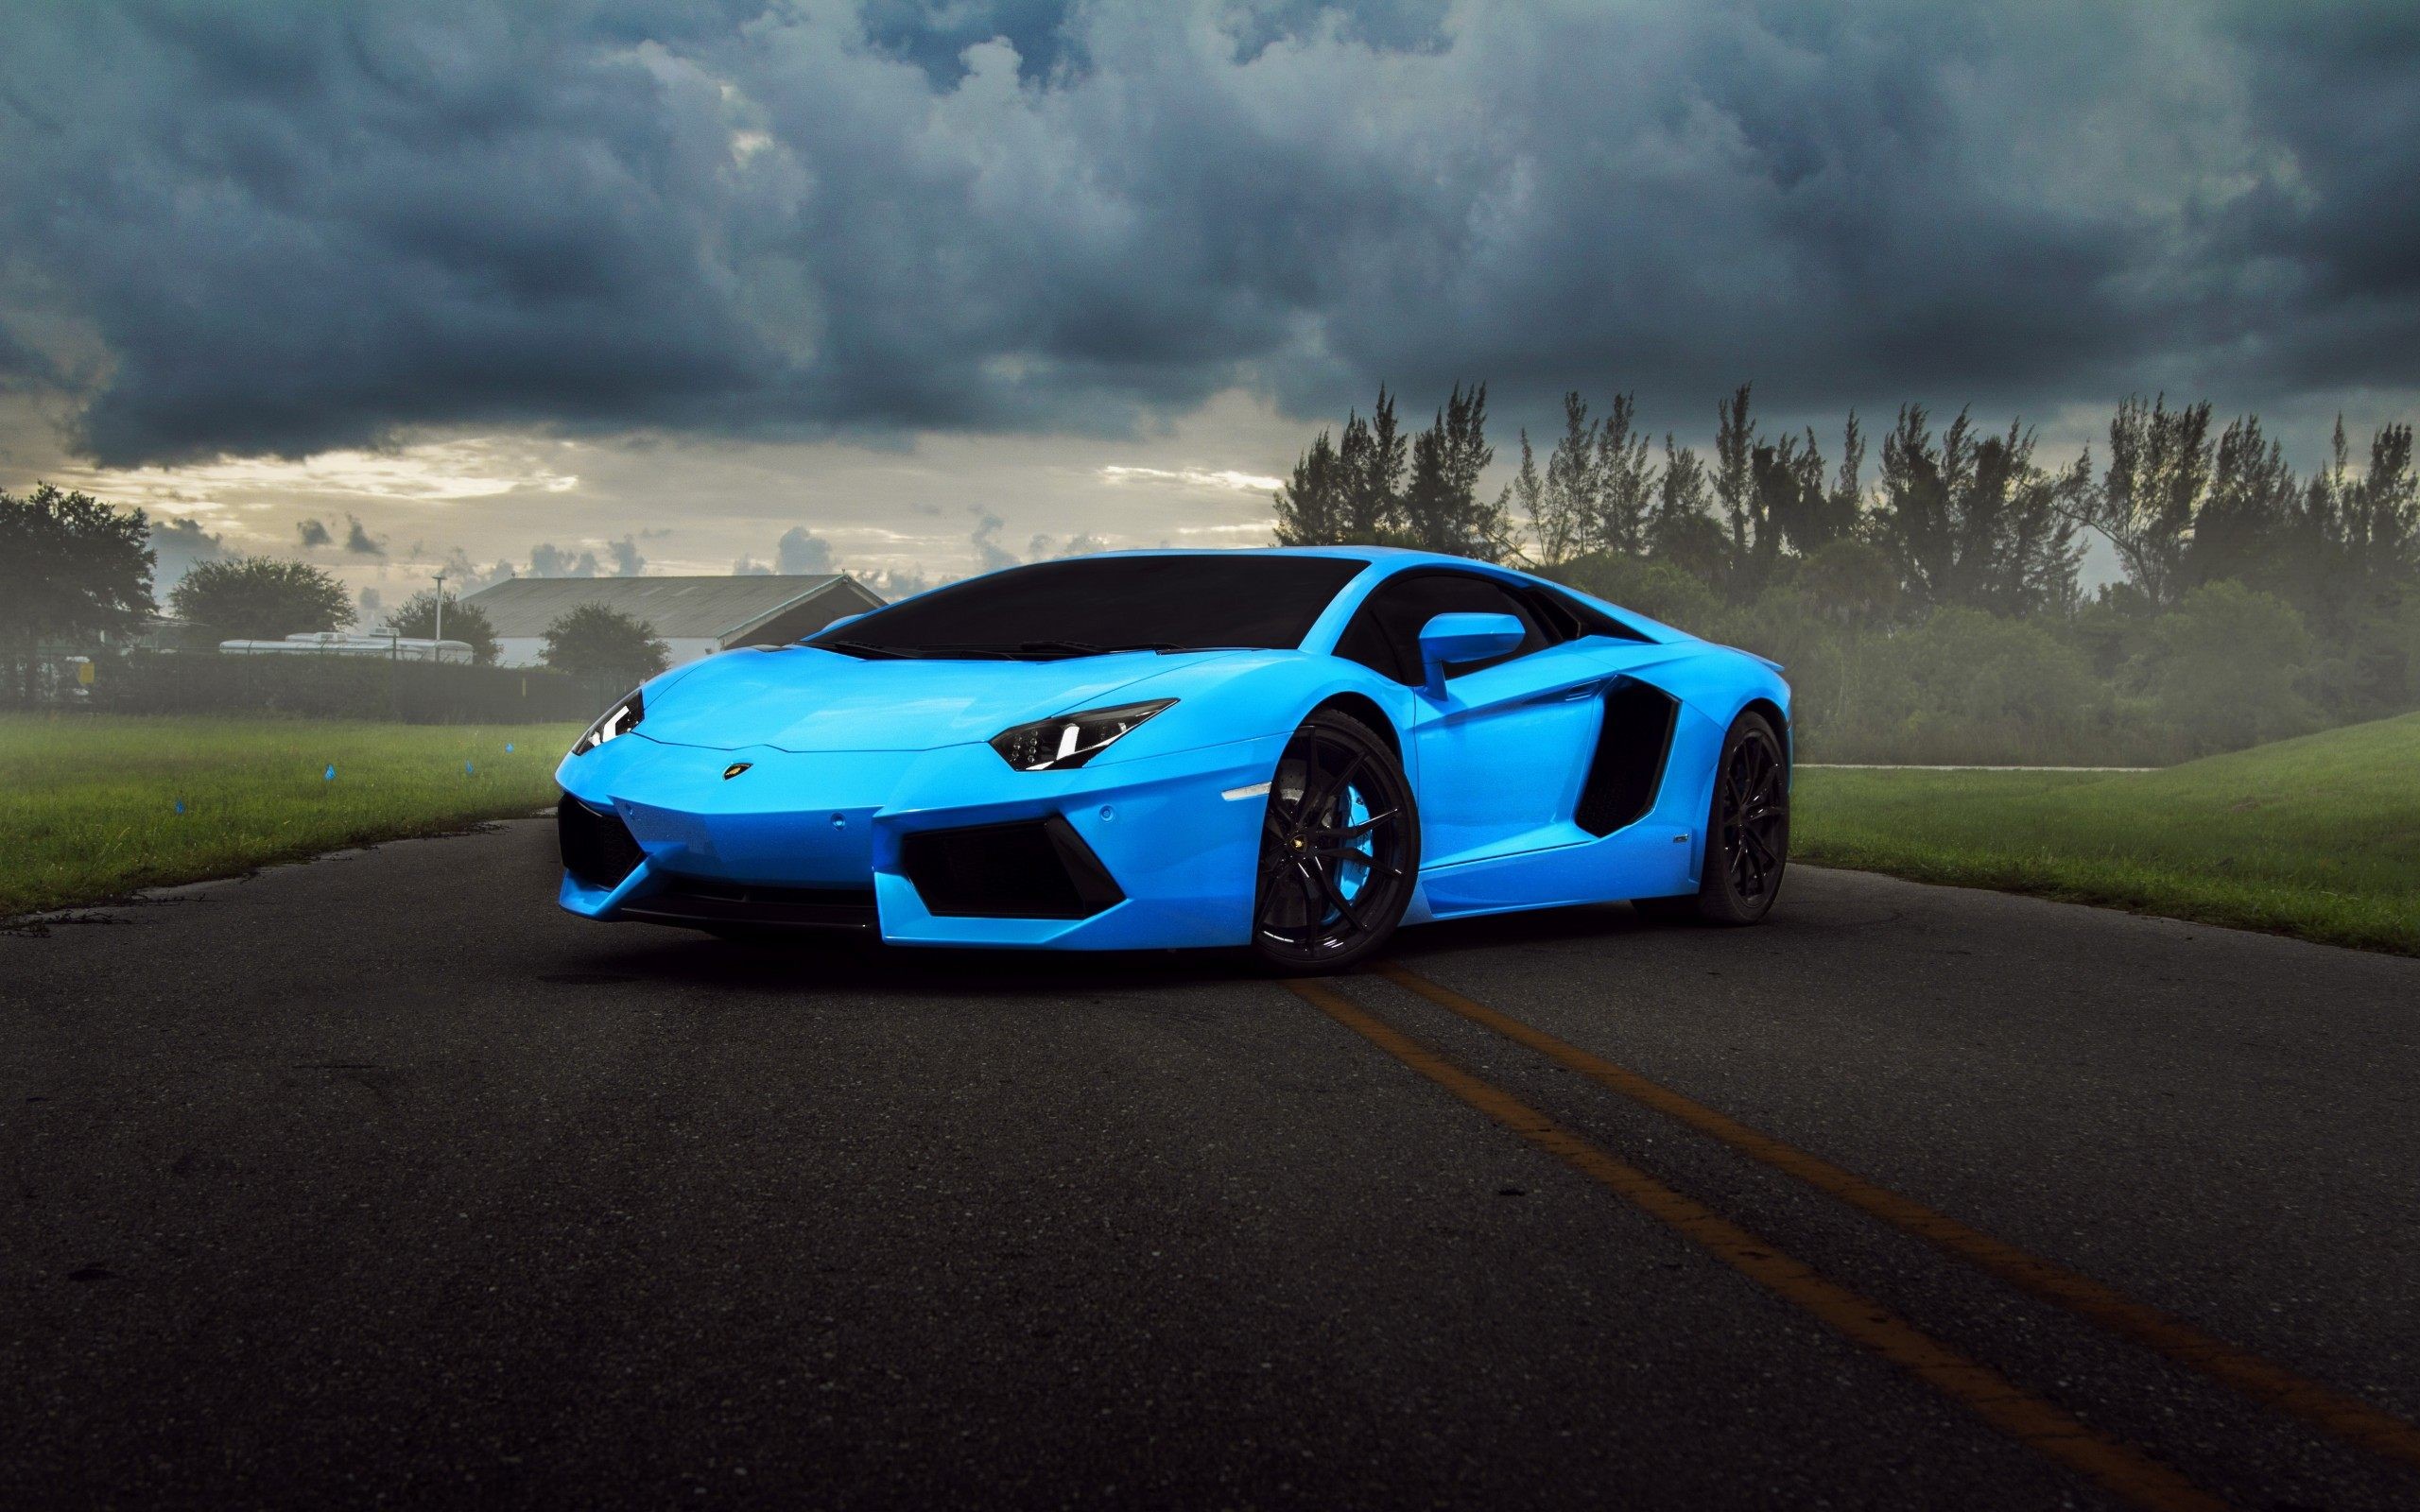 Hình nền siêu xe Lamborghini full HD sẽ mang đến cho bạn một trải nghiệm tuyệt vời về màu sắc và chi tiết của các siêu xe. Bạn sẽ được đắm mình trong không gian thể hiện sự tinh tế cùng đường nét hoàn hảo của những mẫu xe này. Hãy tải và sử dụng hình nền này để thể hiện đẳng cấp và sự mạnh mẽ của bạn.